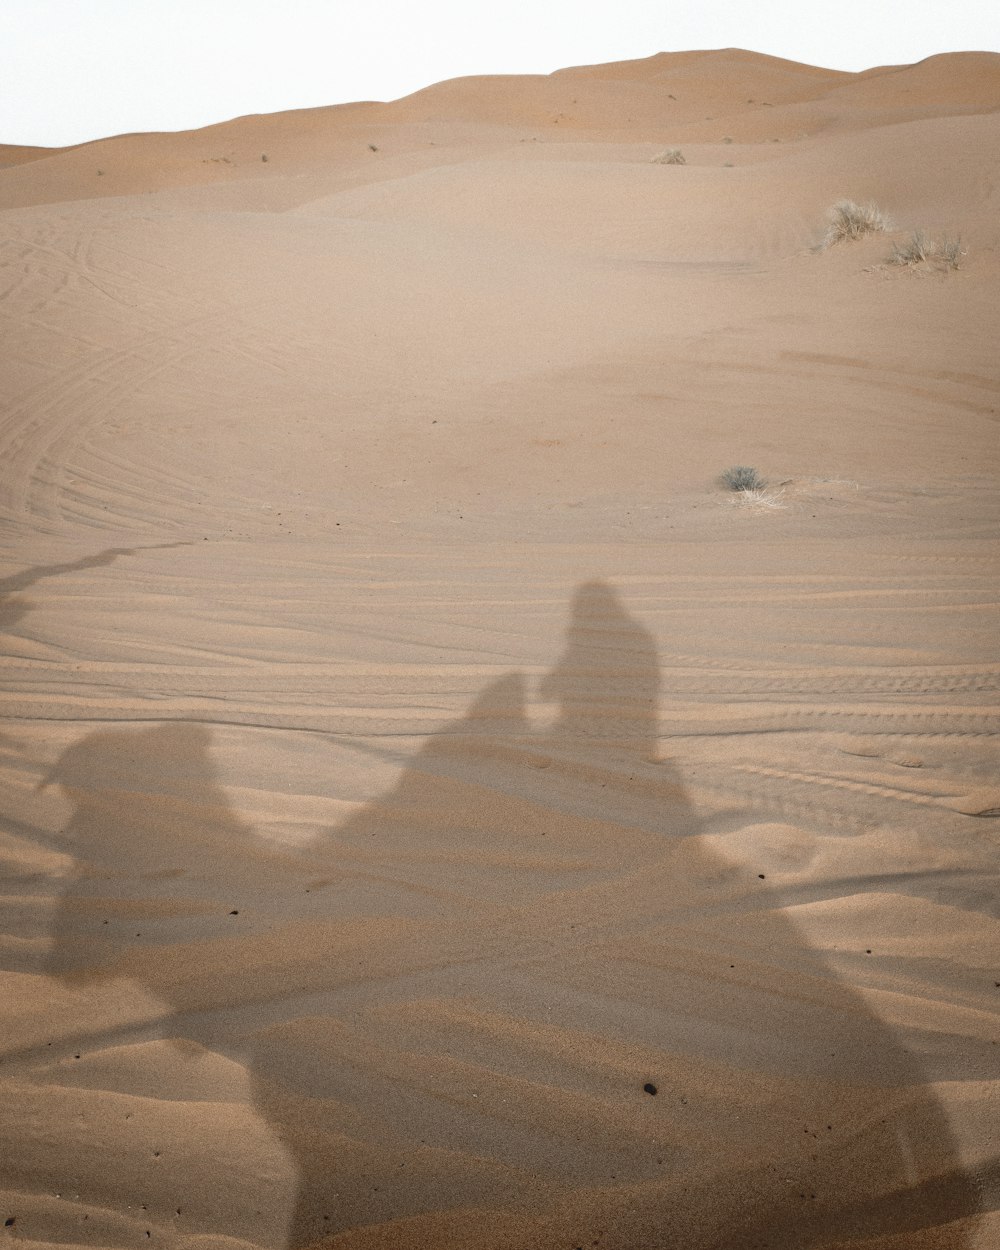 Schatten der Person auf Sand während des Tages